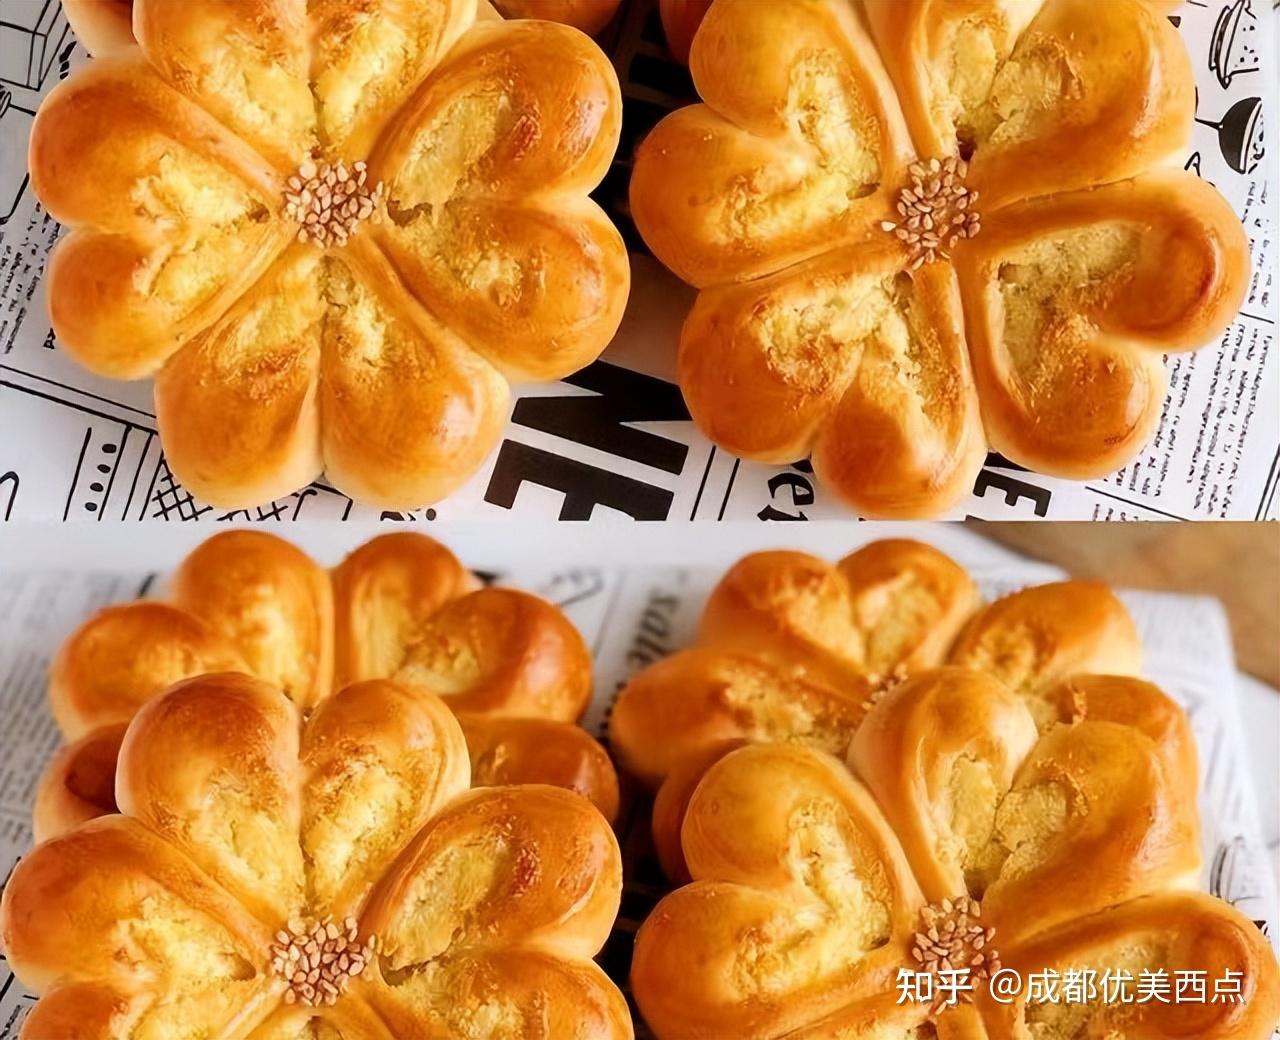 国内时下最流行的面包简餐咖啡店-日本这家店领先了11年_空间